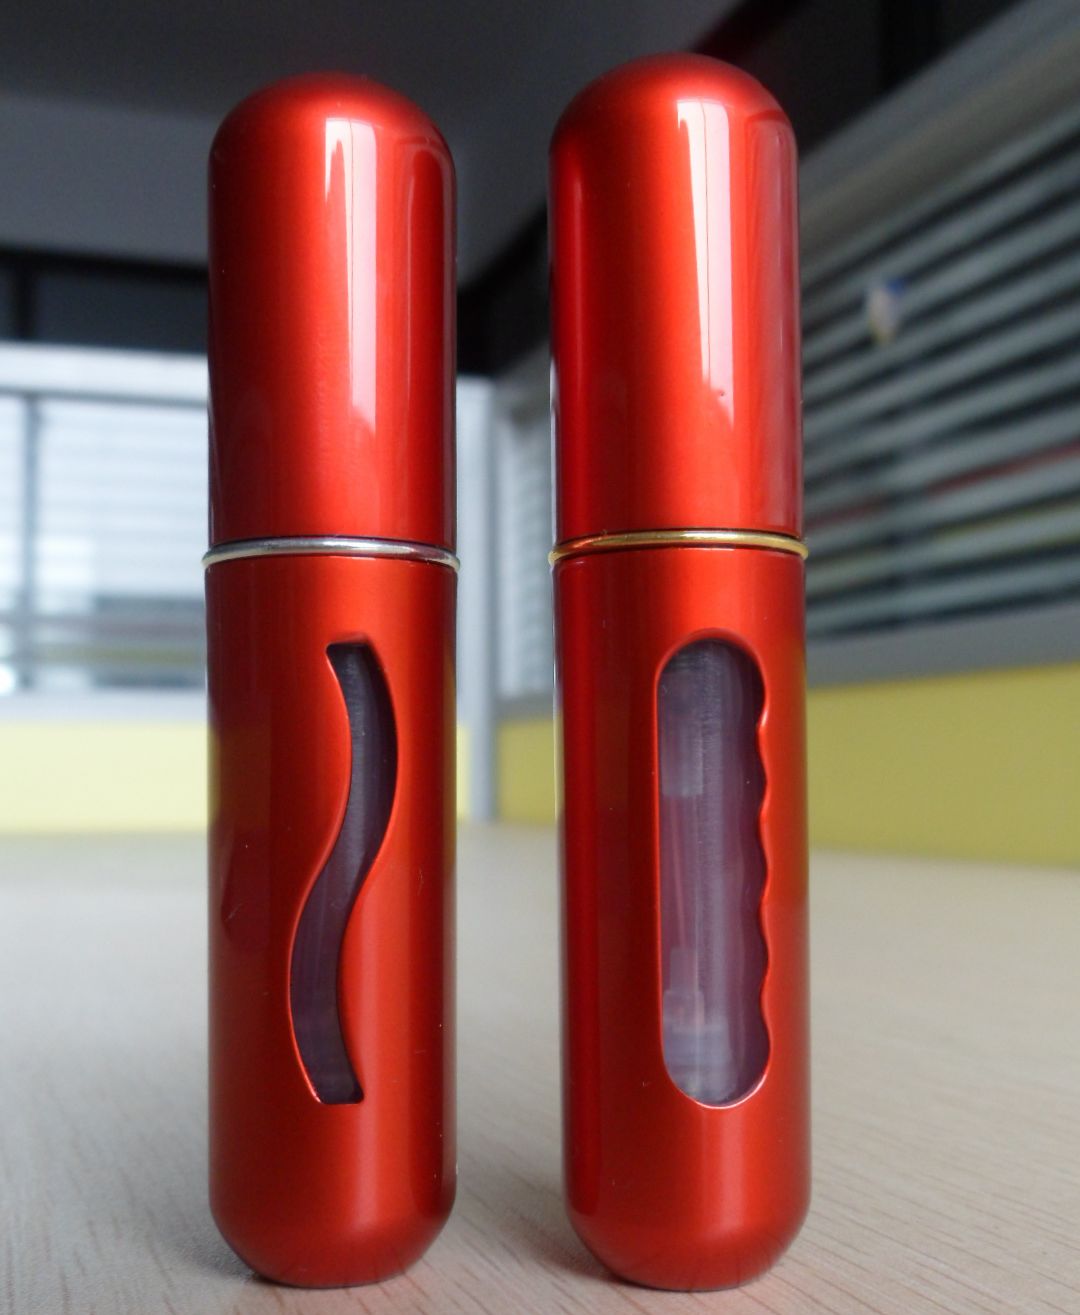 Refillable Perfume Atomizer Made in Korea